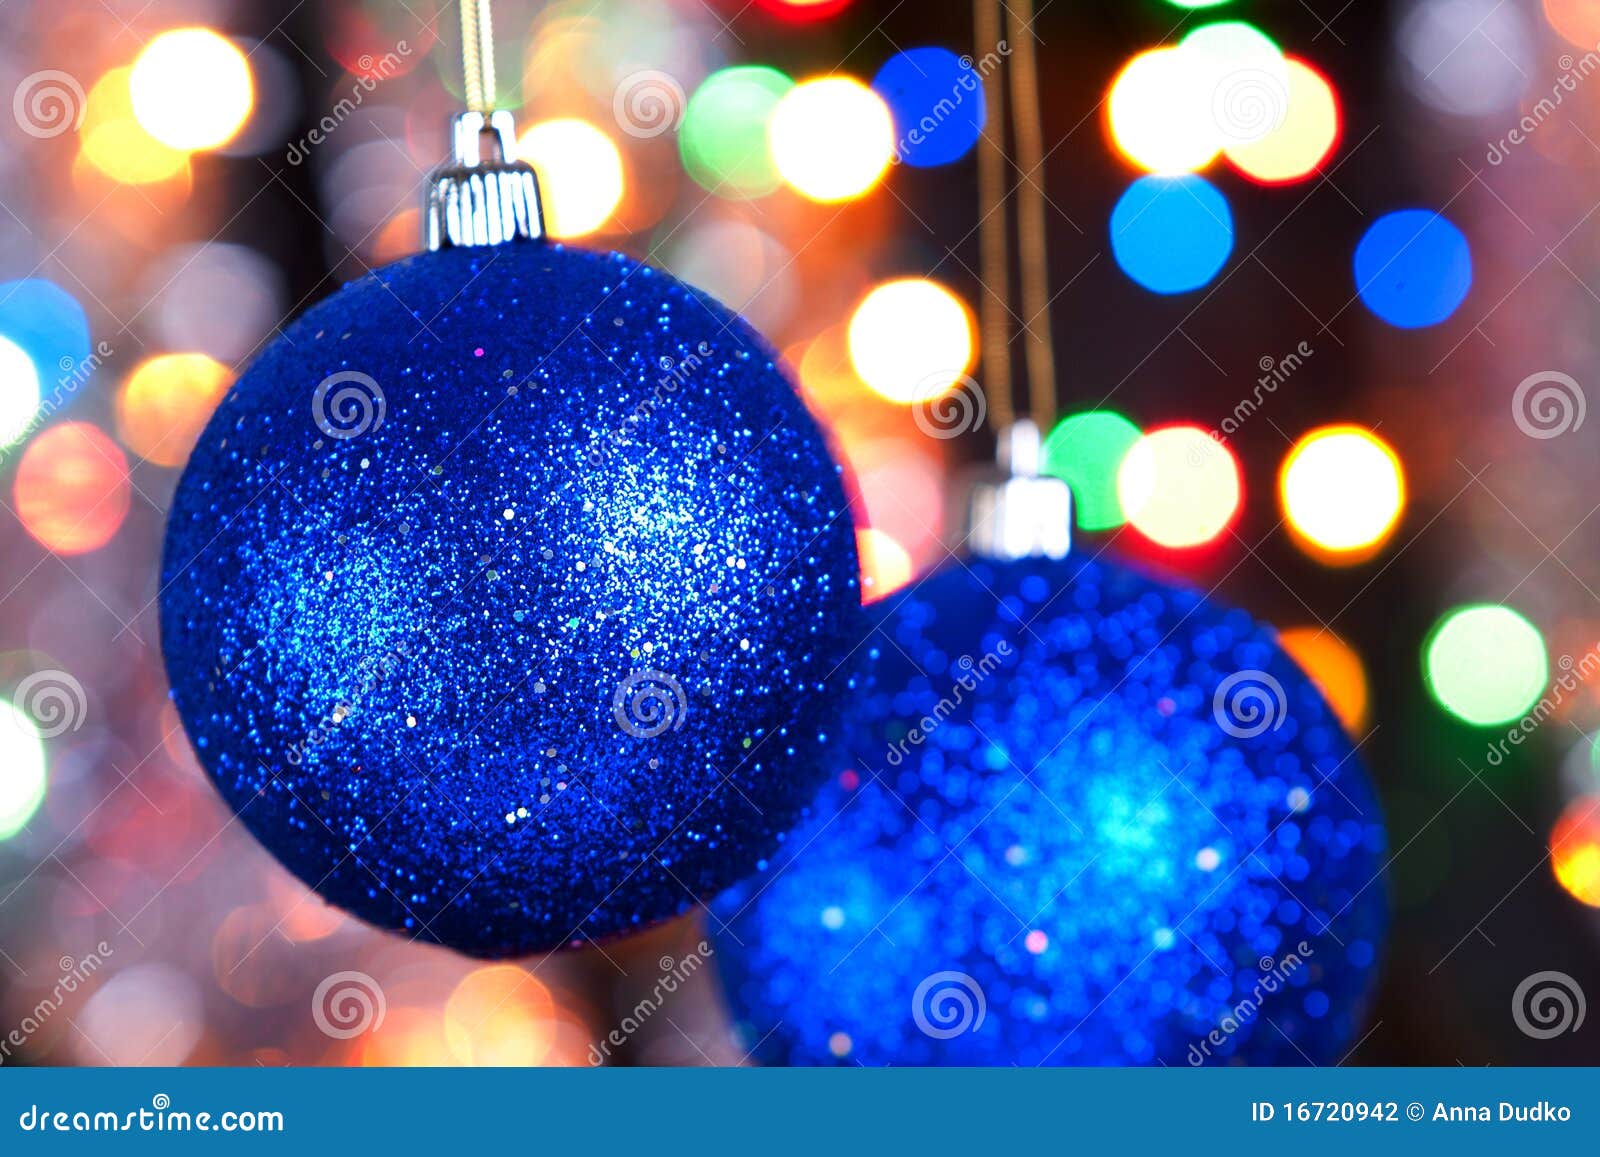 Christmas decorated stock photo. Image of shiny, decorative - 16720942